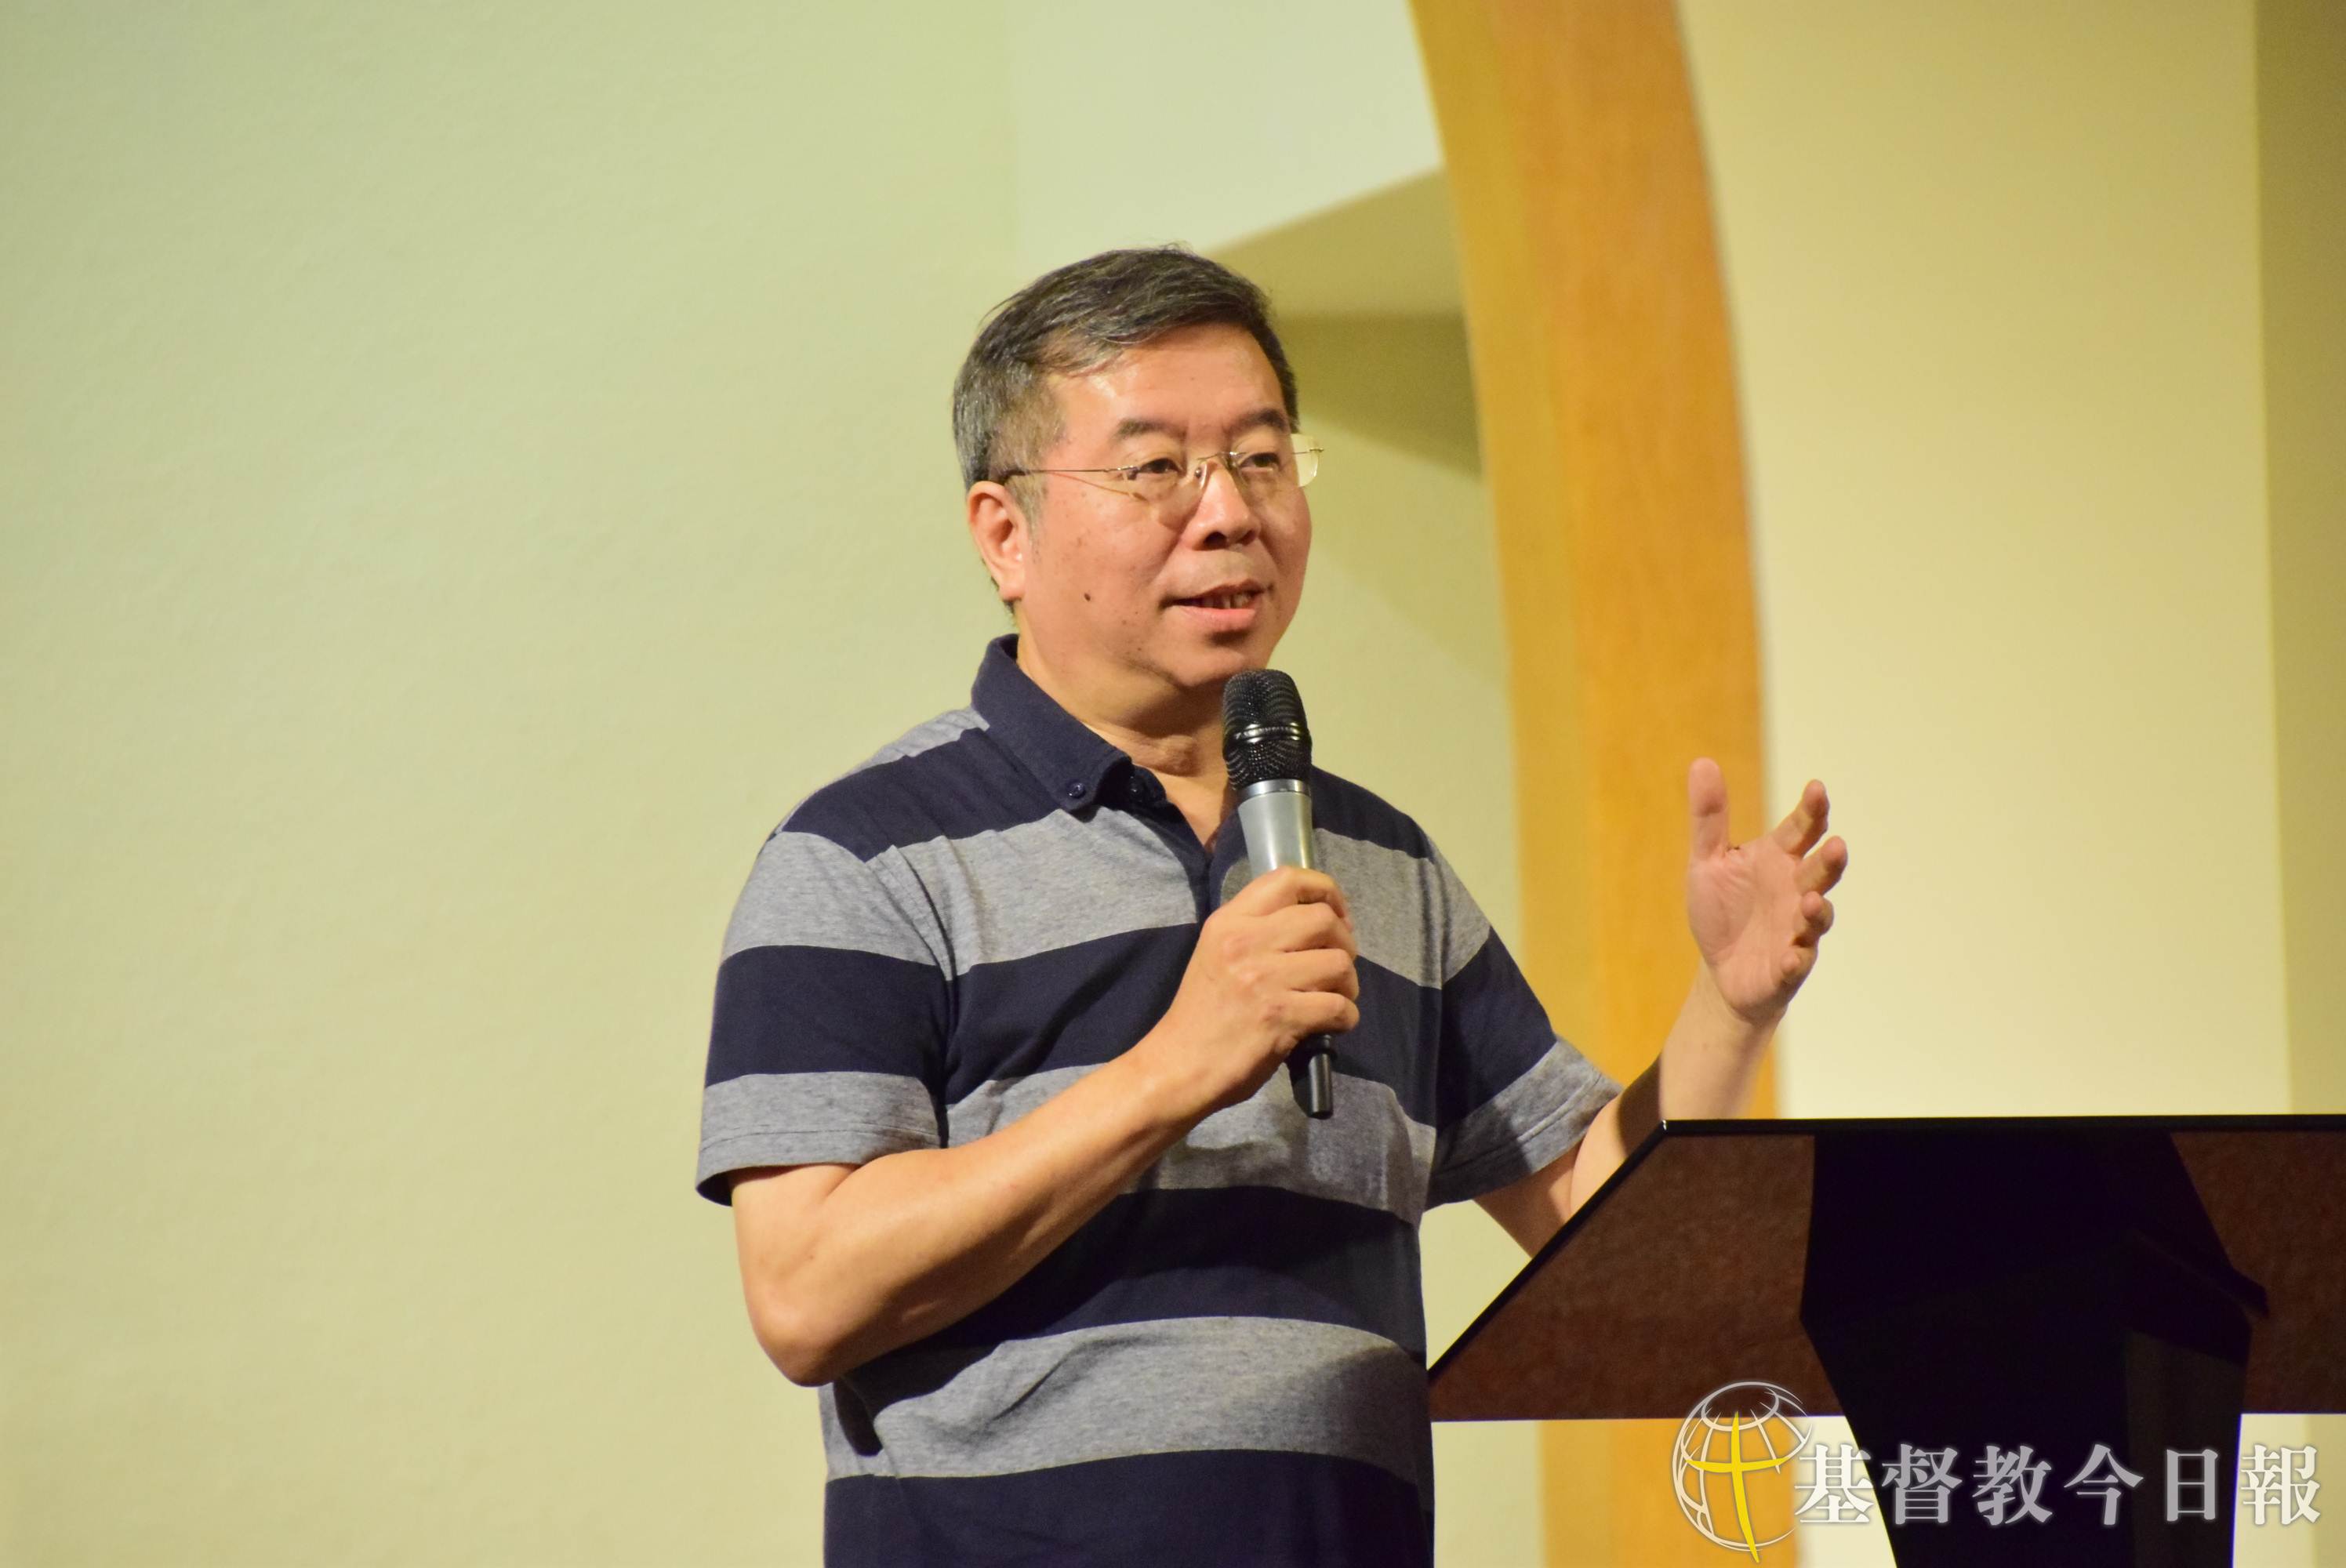 台中旌旗教会主任牧师萧祥修也率领教会全力投入此次公投。